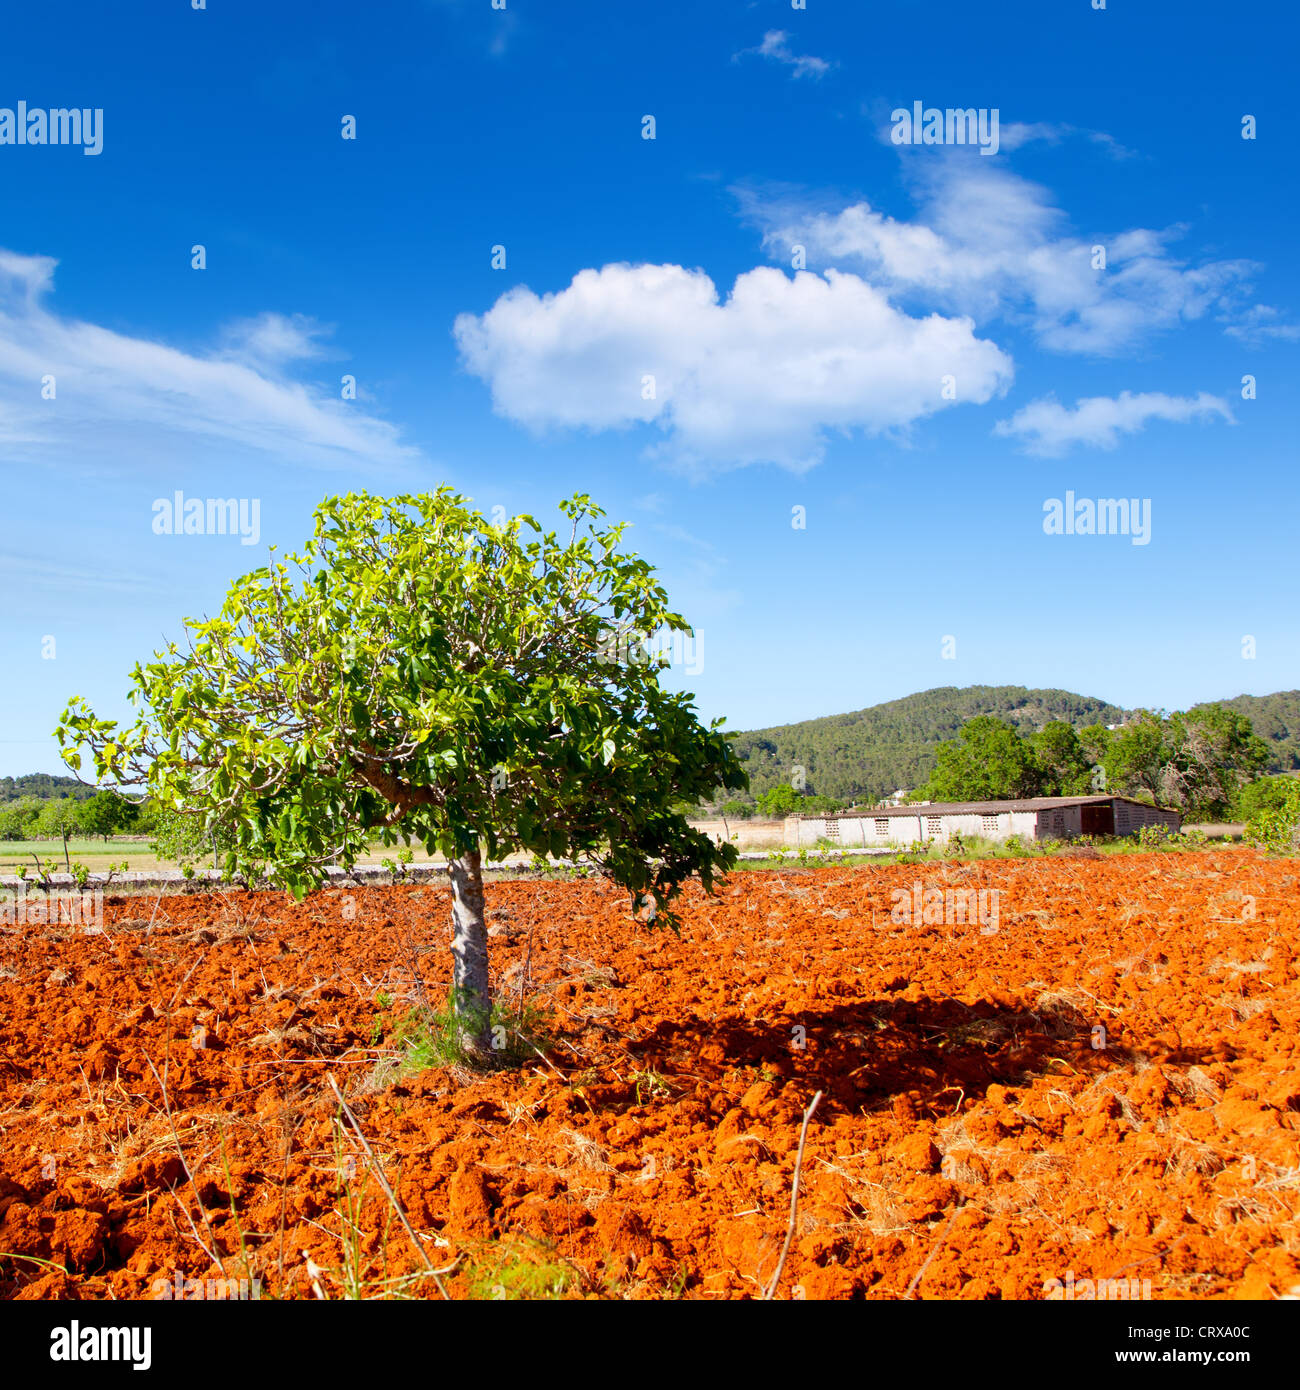 Ibiza agricoltura mediterranea con albero di fico su rosso argilla del suolo Foto Stock